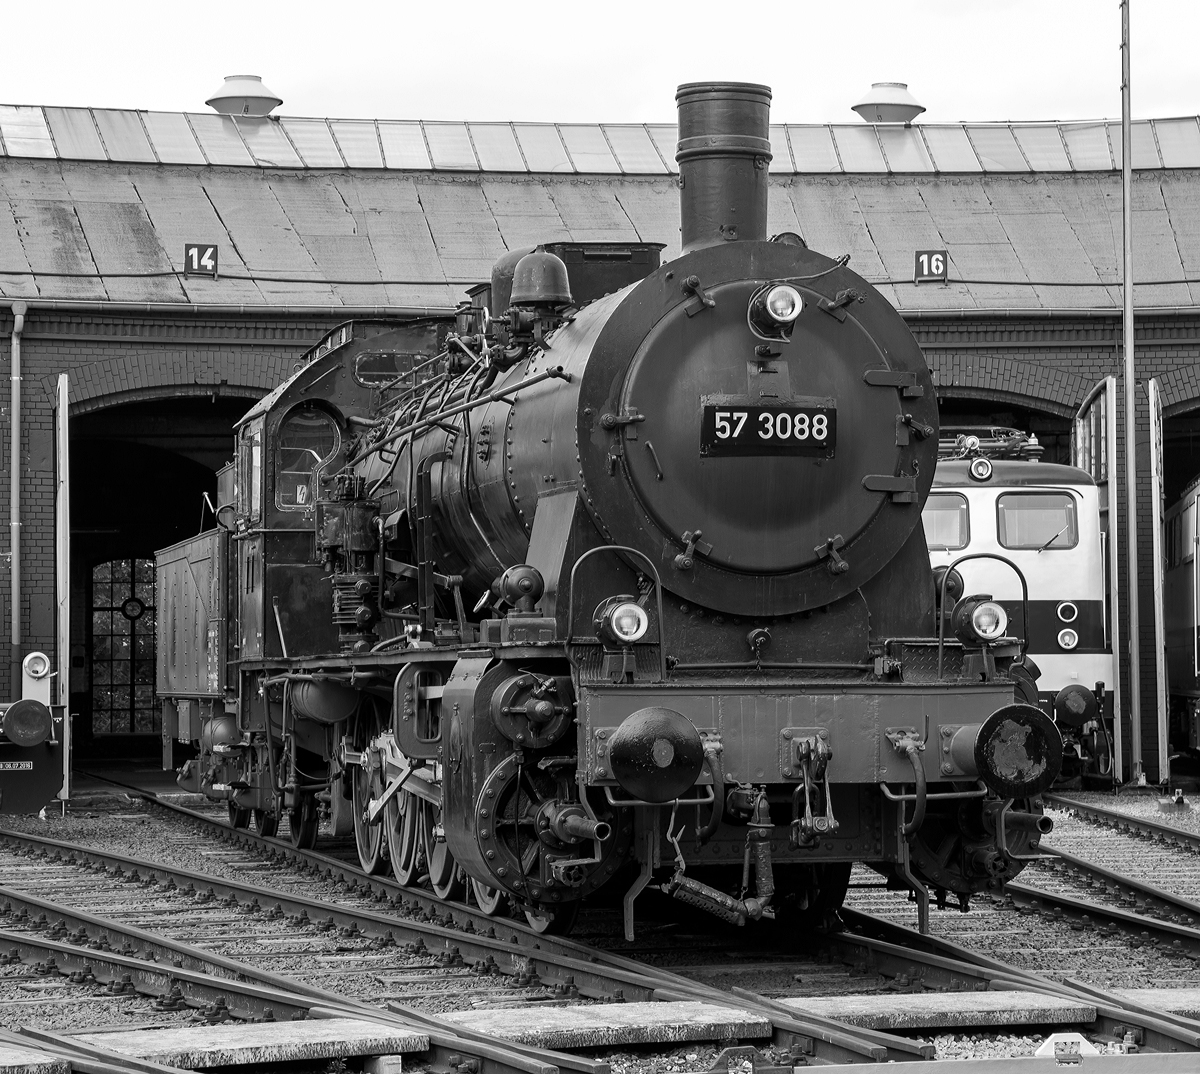 
Nochmal nun in schwarz-weiß....
Die preußische G10 Schlepptender-Güterzuglokomotive 57 3088 (ex G10 6011 Halle, ex DB 057 088-7) am 26.08.2017 beim Lokschuppenfest im Südwestfälische Eisenbahnmuseum in Siegen.

Die Lok wurde 1922 von Rheinmetall unter der Fabriknummer 550 gebaut und als G10 6011 Halle an die Deutsche Reichsbahn geliefert, 1925 erfolgte die um Bezeichnung in DR 57 3088 (nach dem Krieg DB 57 3088). Kurz vor der z-Stellung am 10.06.1968 wurde sie zum 01.01.1968 noch in DB 057 088-7 umgezeichnet. Am 24.06.1970 schied sie aus dem Bestand der DB aus. Von 1974 bis 2002 war sie als Denkmal auf dem Gelände des Bahnbetriebswerks Haltingen aufgestellt (mit Unterbrechungen als Ausstellungstück). Nachdem der Personalbestand in Haltingen zur Pflege gemäß den Auflagen des VM Nürnberg nicht mehr ausreichte, kam sie 2002 nach Siegen.